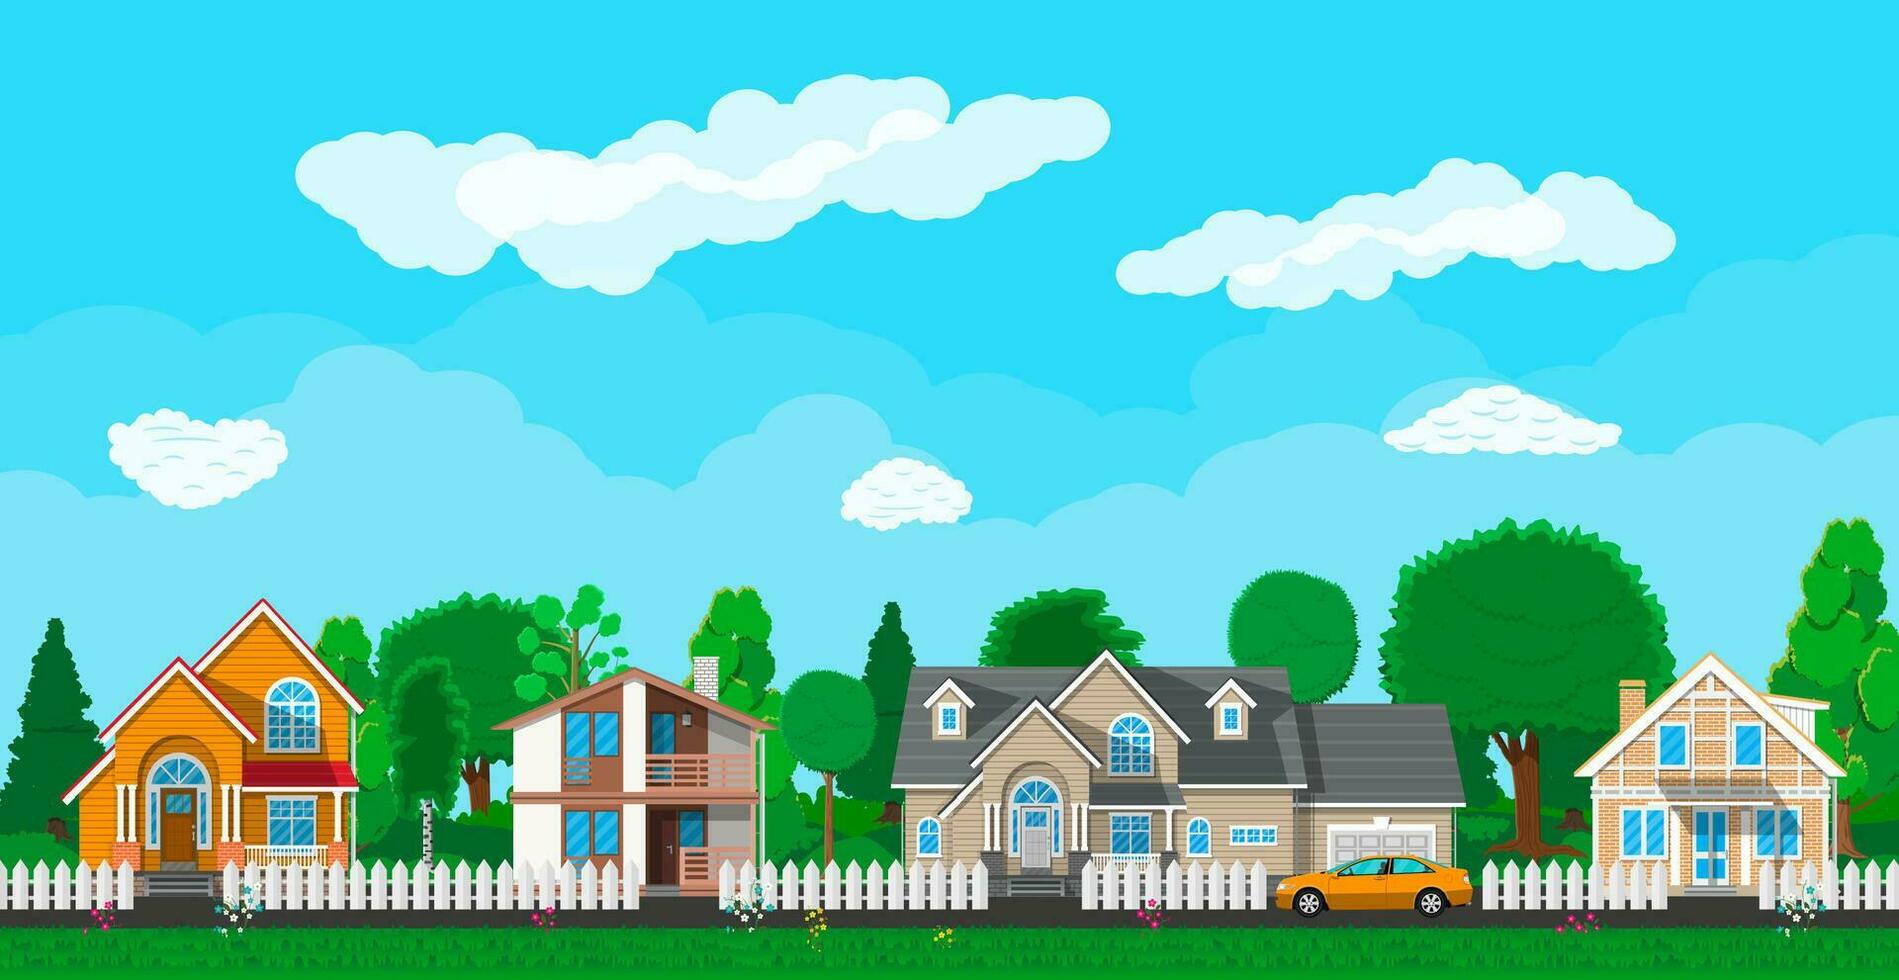 privaat buitenwijk huizen met auto, bomen, weg, lucht en wolken. dorp. vector illustratie in vlak stijl